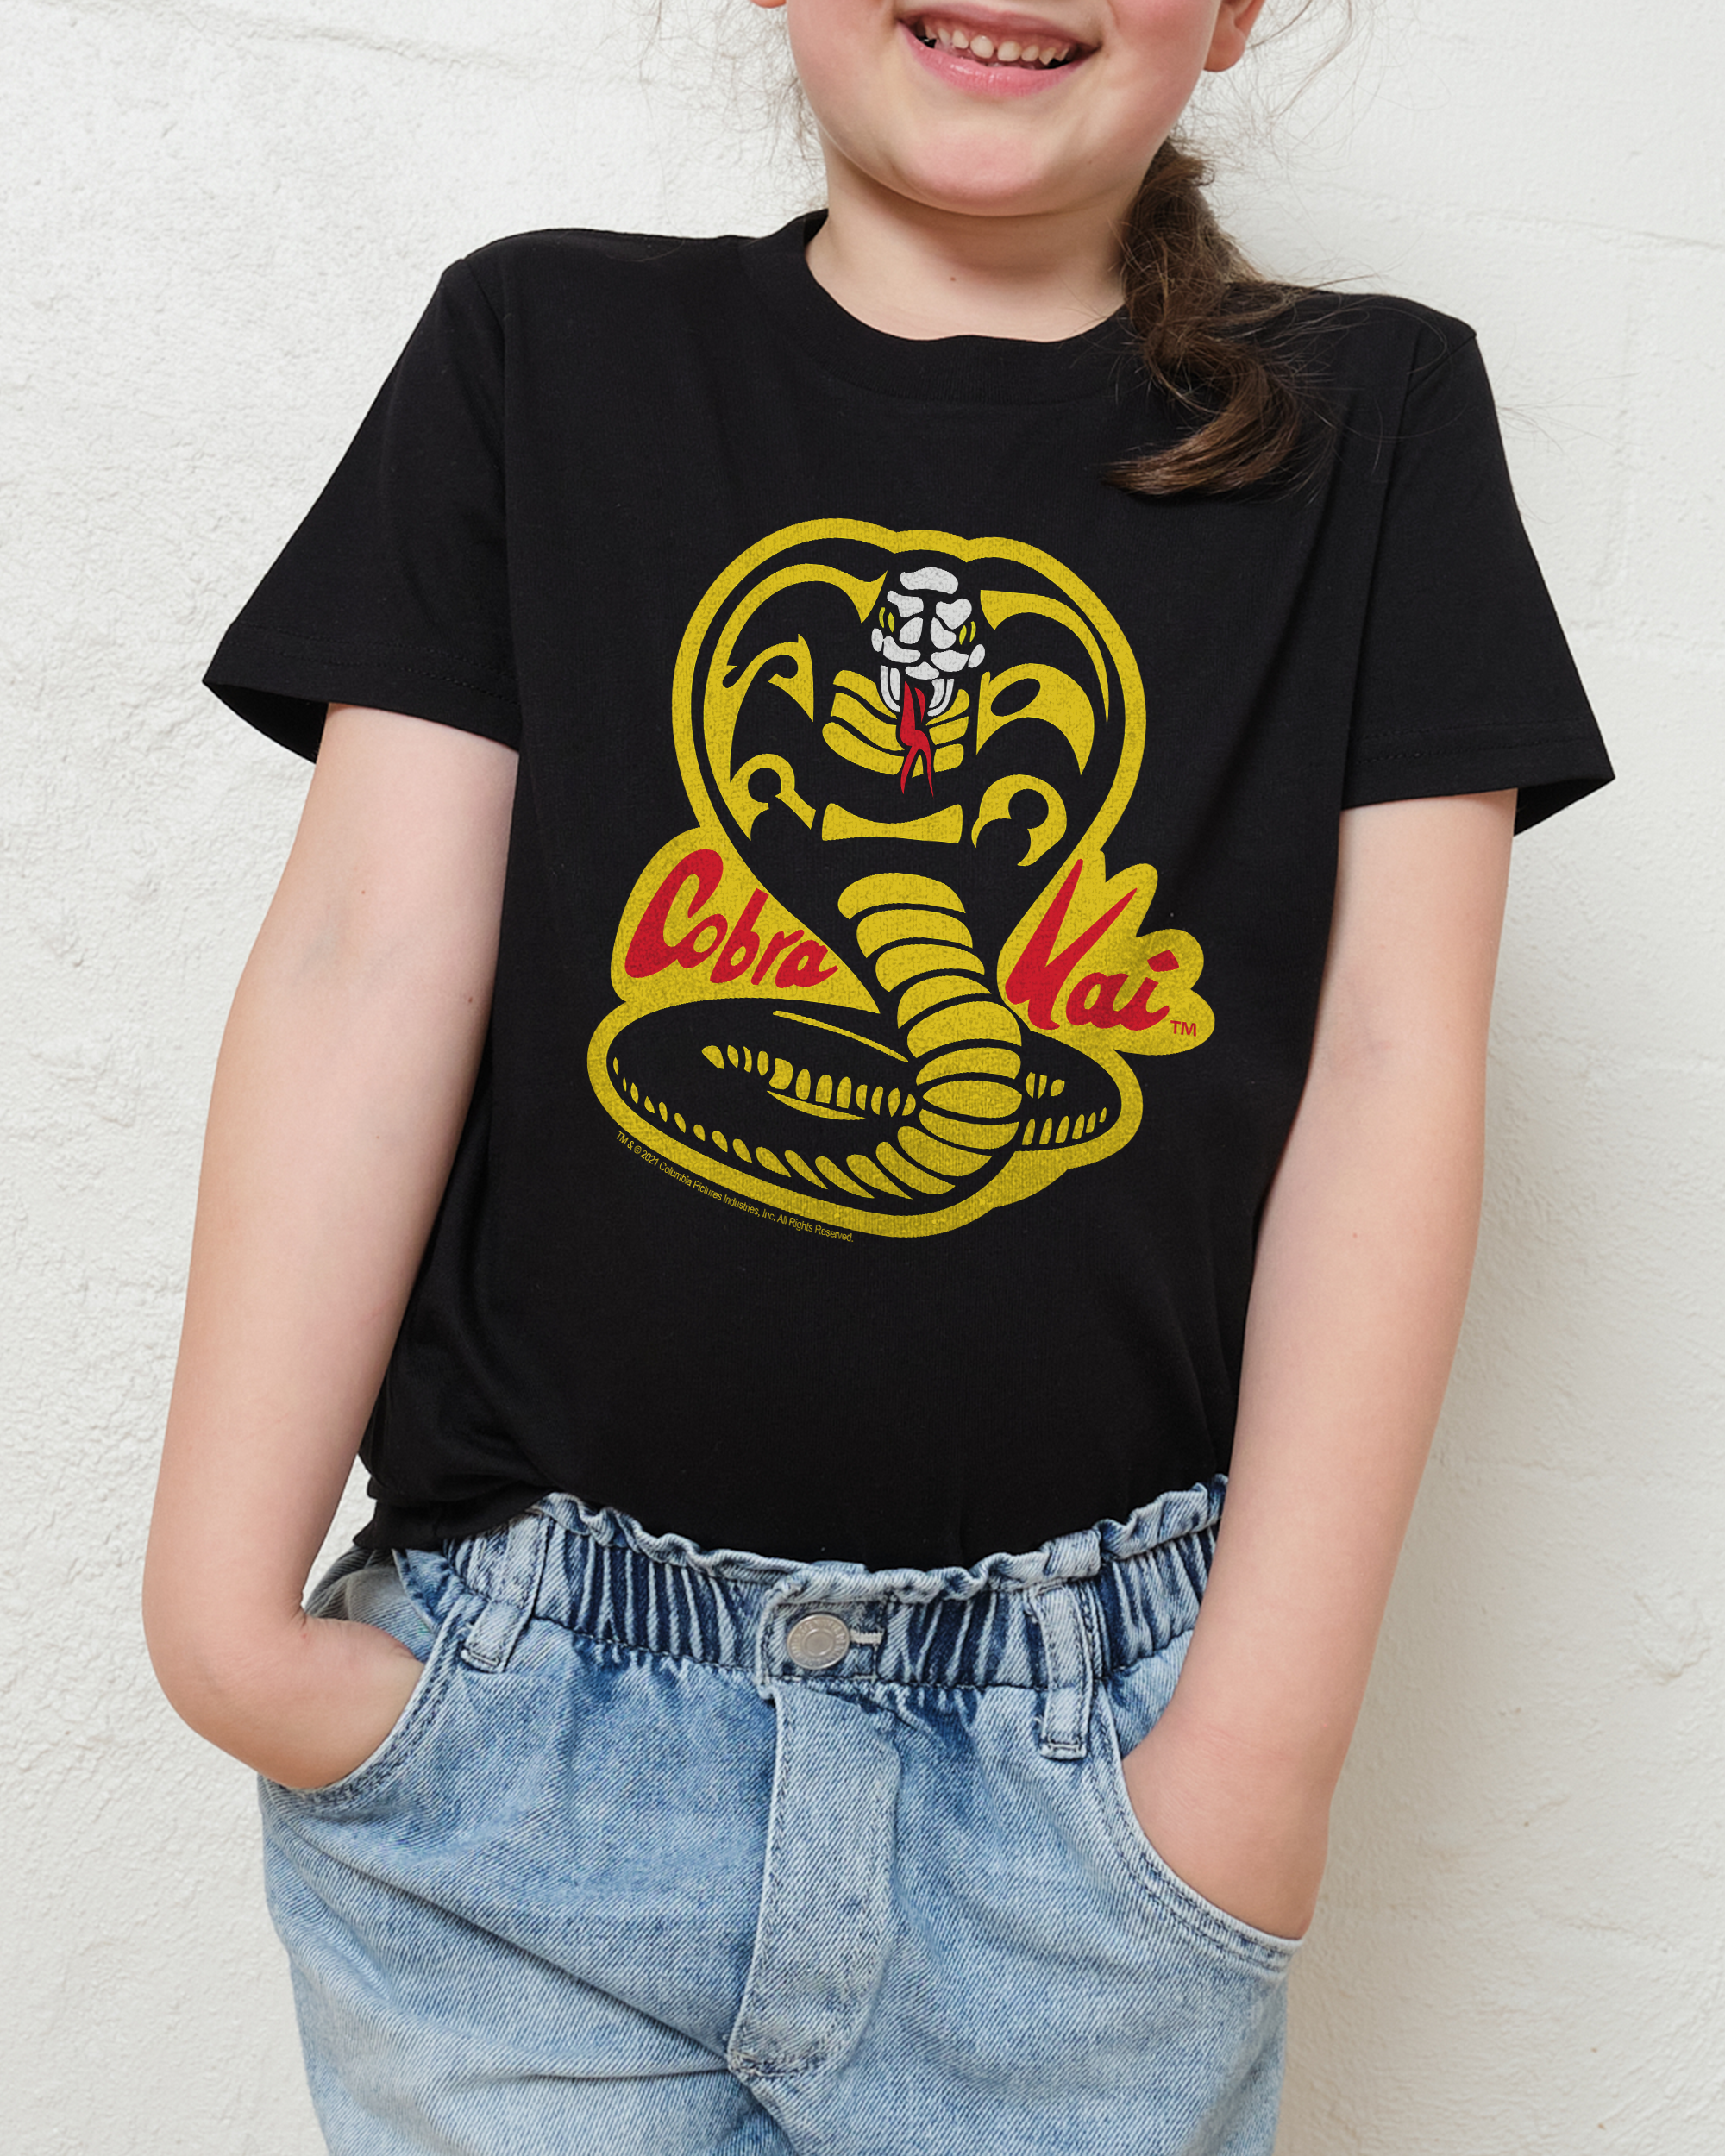 Cobra Kai Logo Kids T-Shirt